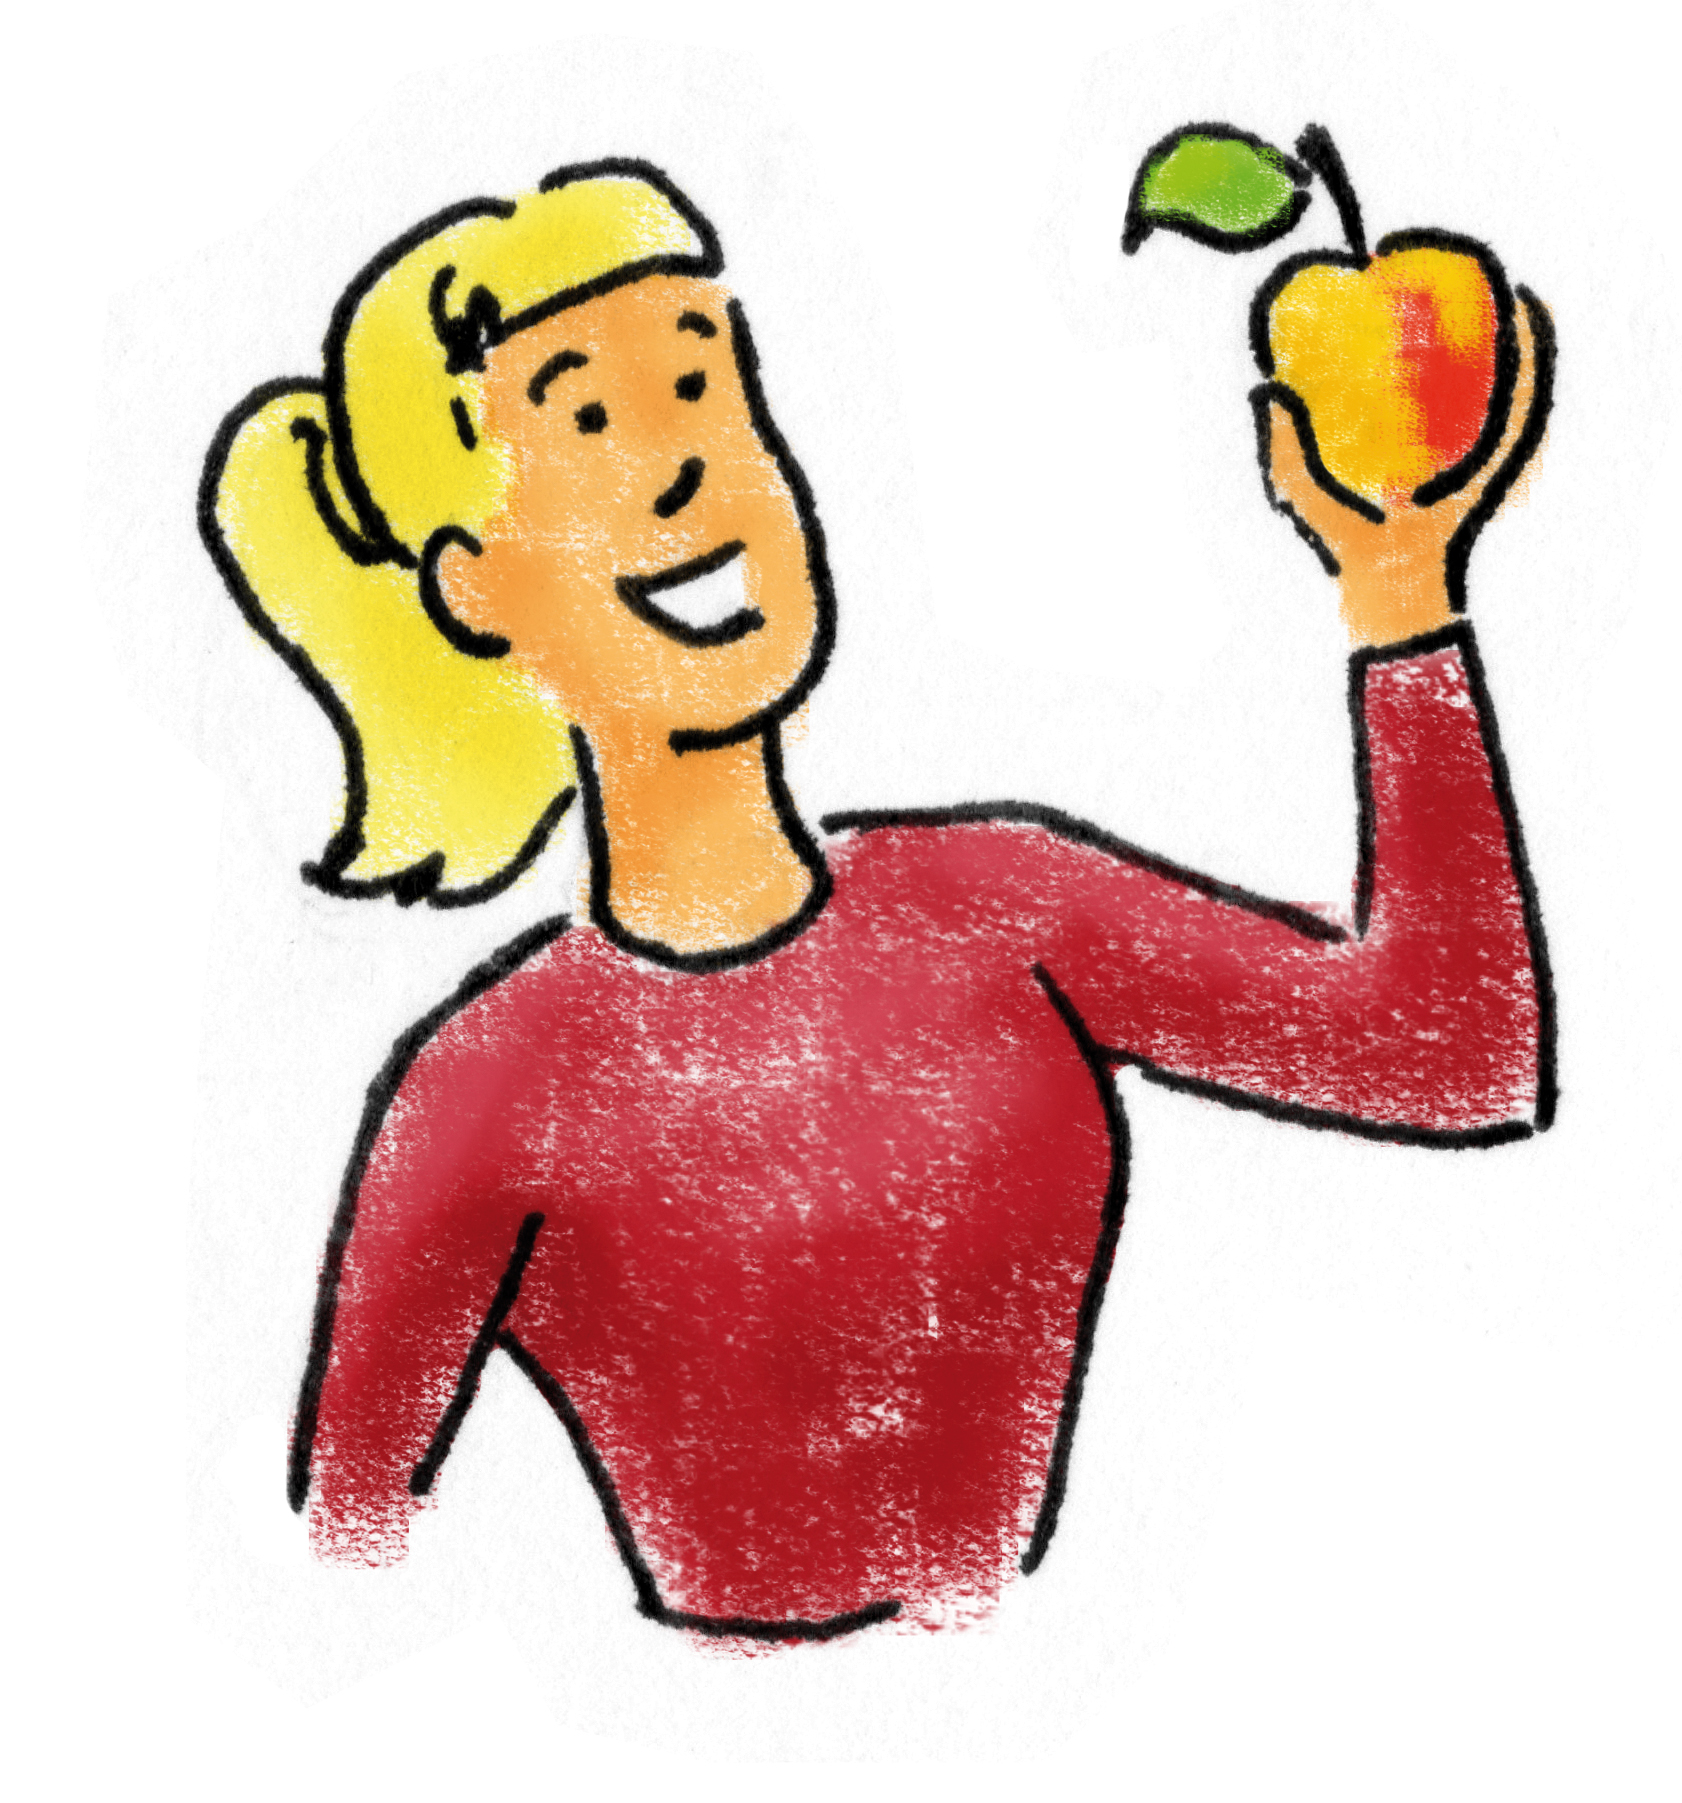 
    
            
                    Gemaltes Bild: Zu sehen ist der Oberkörper einer Frau di einen Apfel in der linken Hand hält und diesen betrachtet.
                
        
